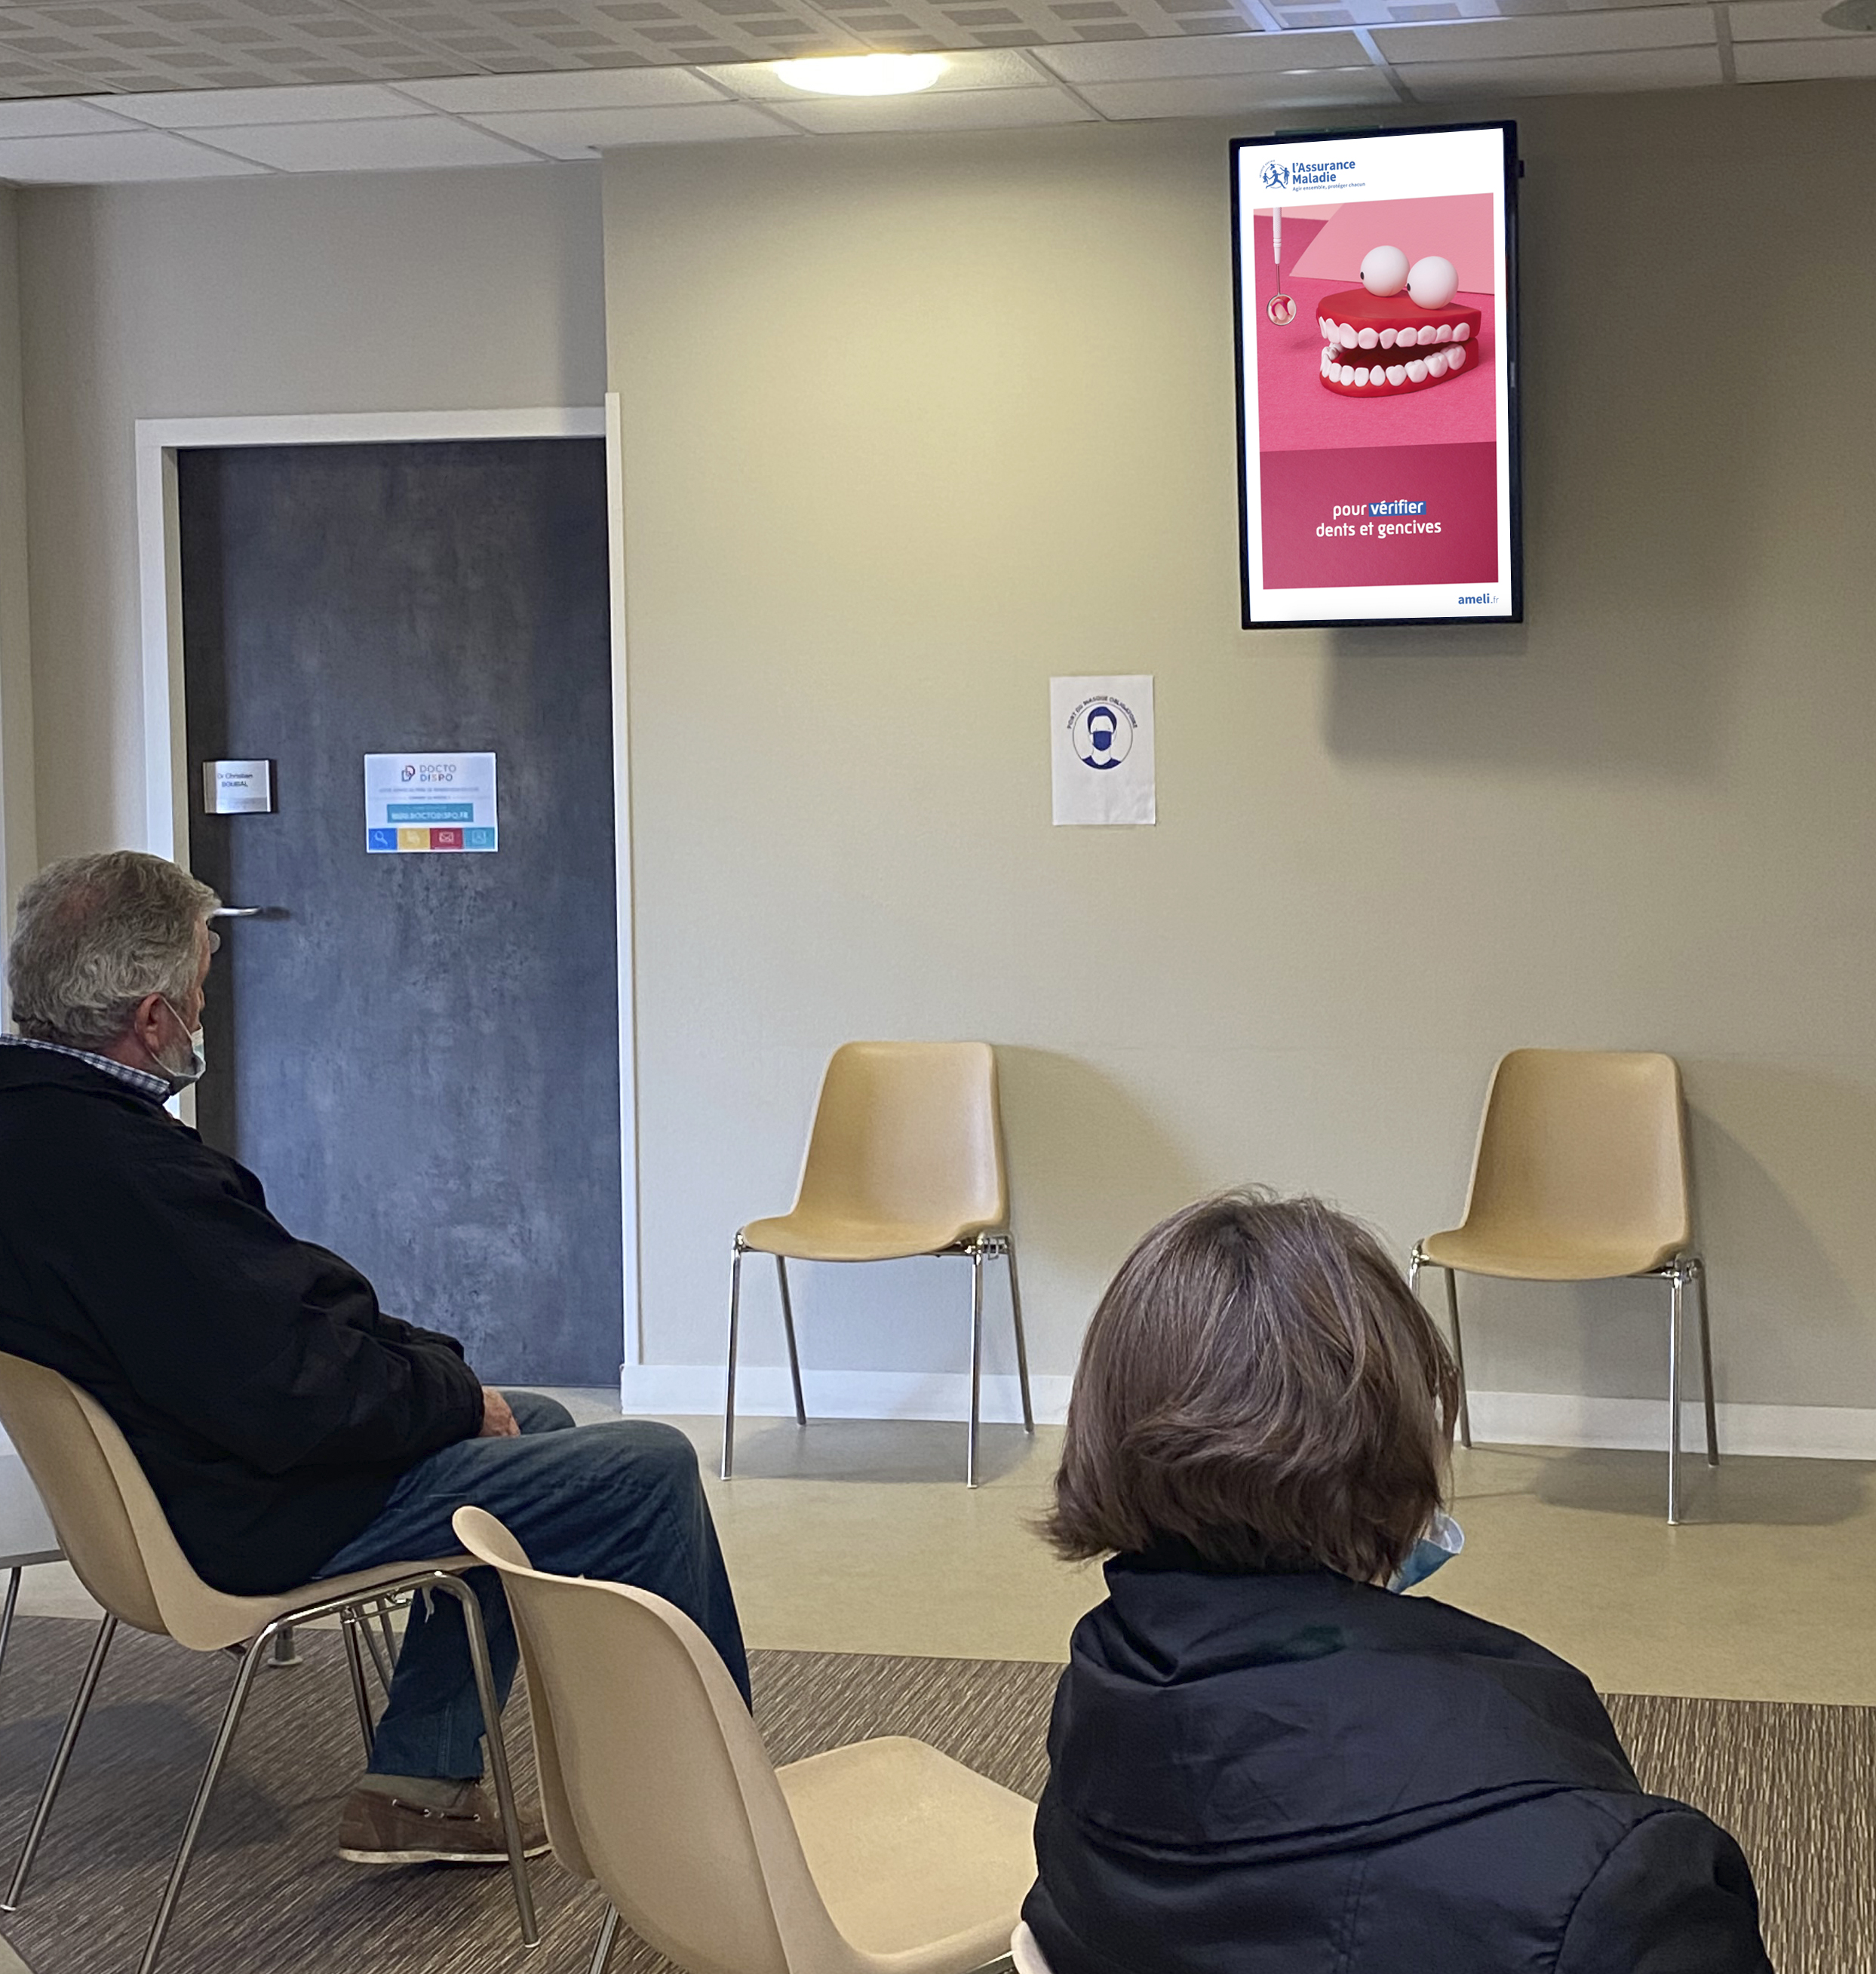 les écrans d'affichage en salle d'attente améliorent la prévention santé